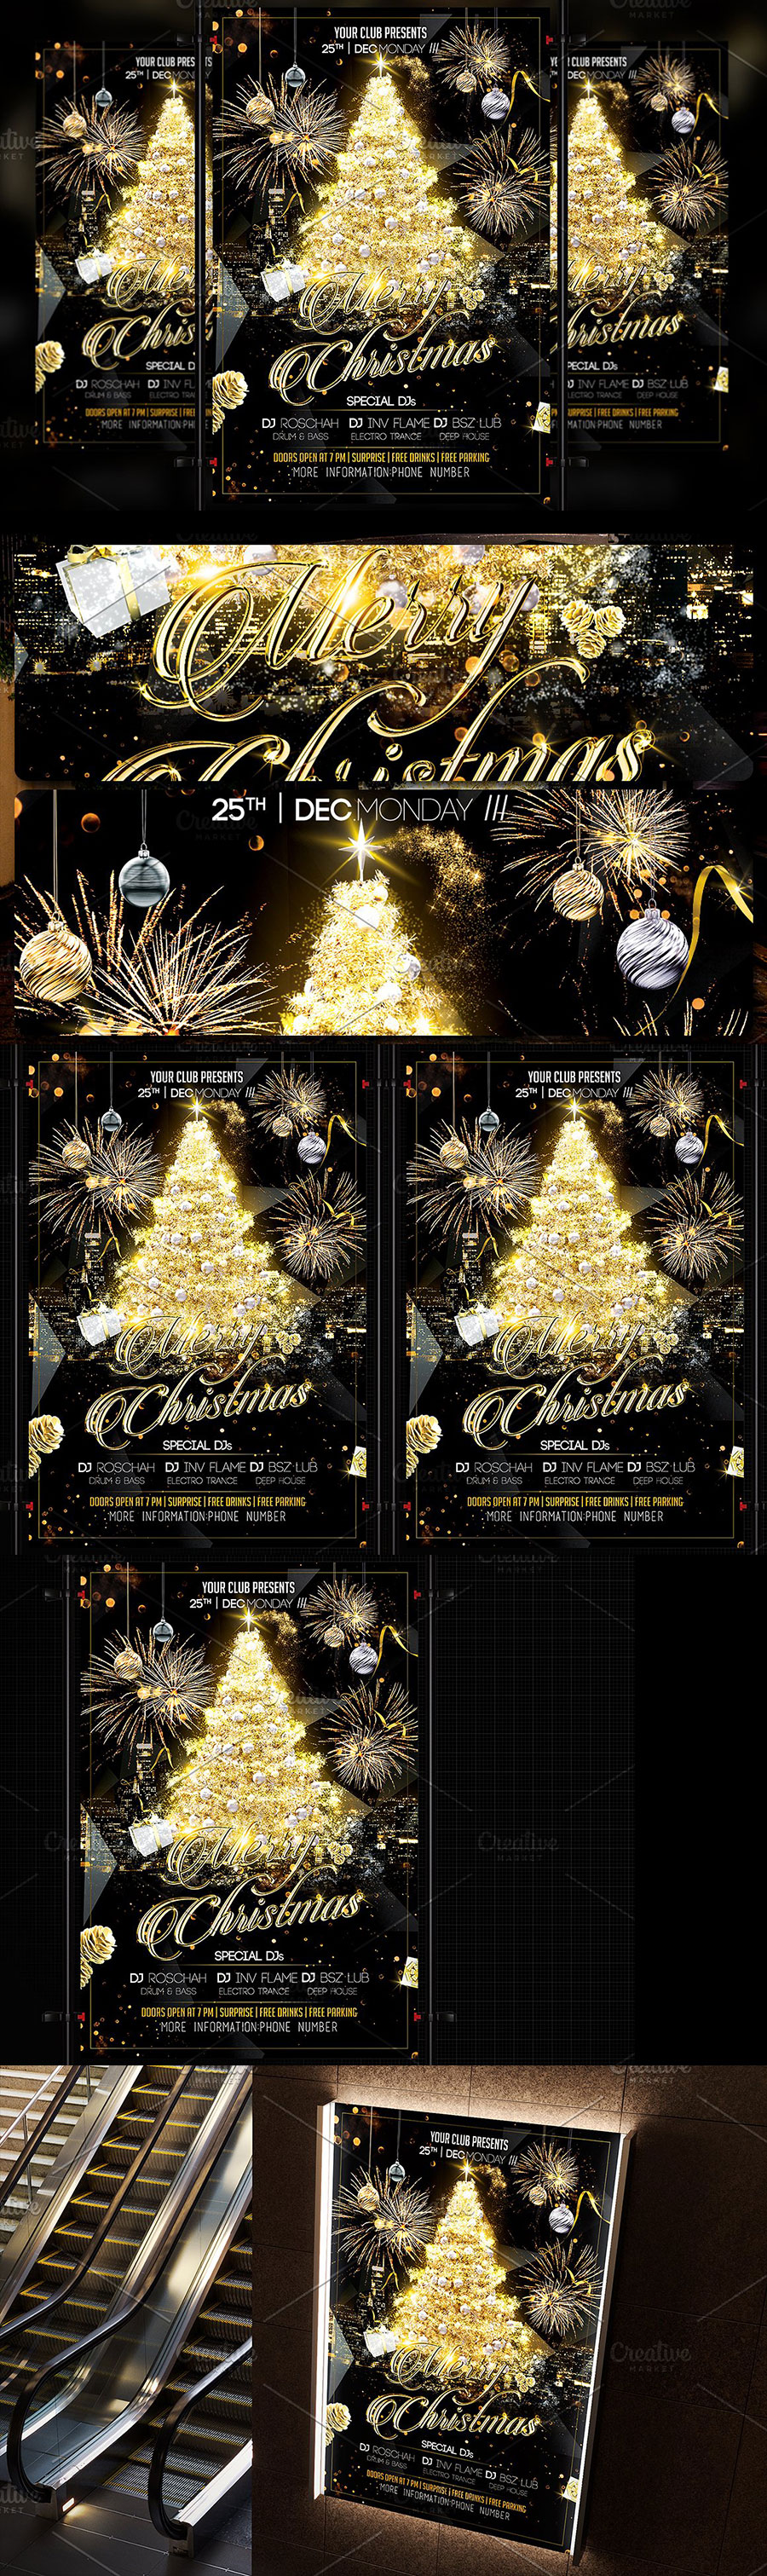 高品质的黑金色圣诞节广告海报模版[PSD]